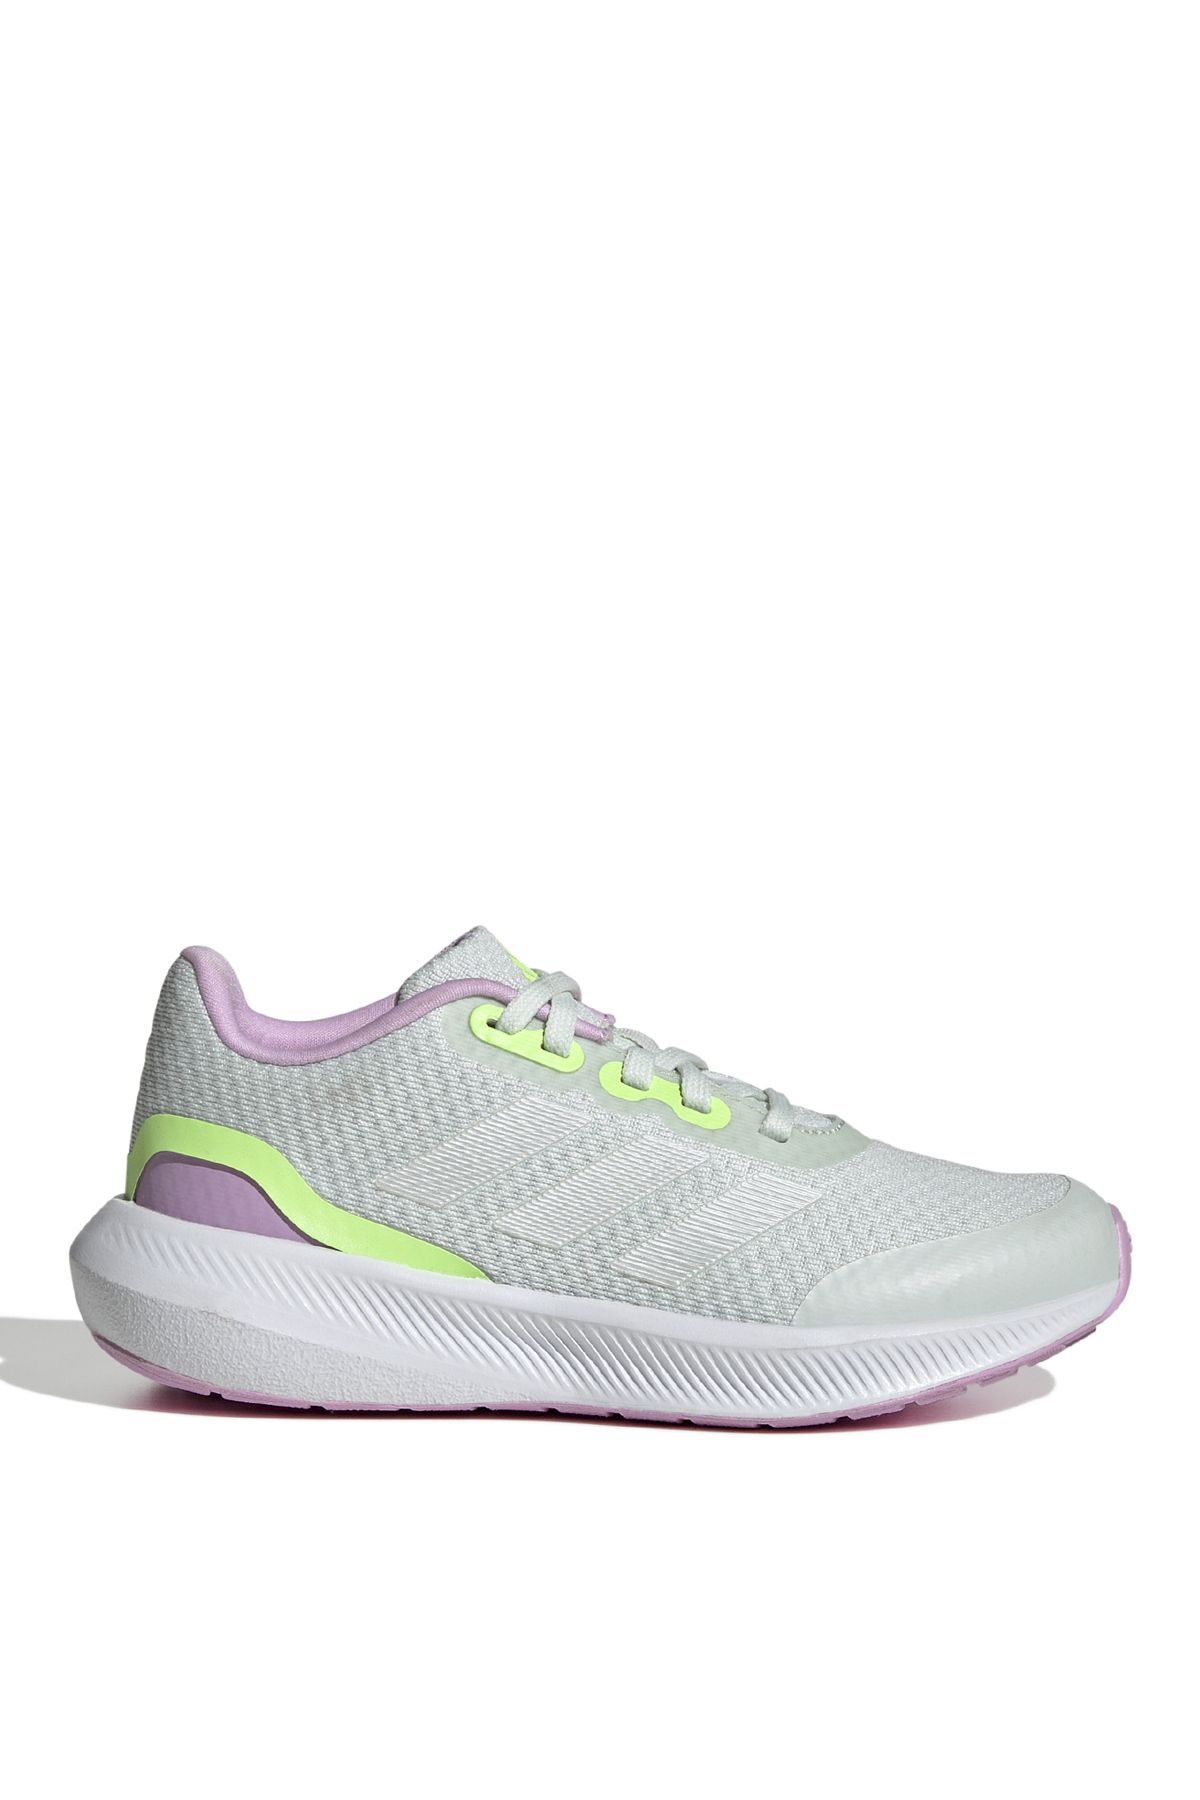 adidas Yeşil Kadın Yürüyüş Ayakkabısı ID0592-RUNFALCON 3.0 K